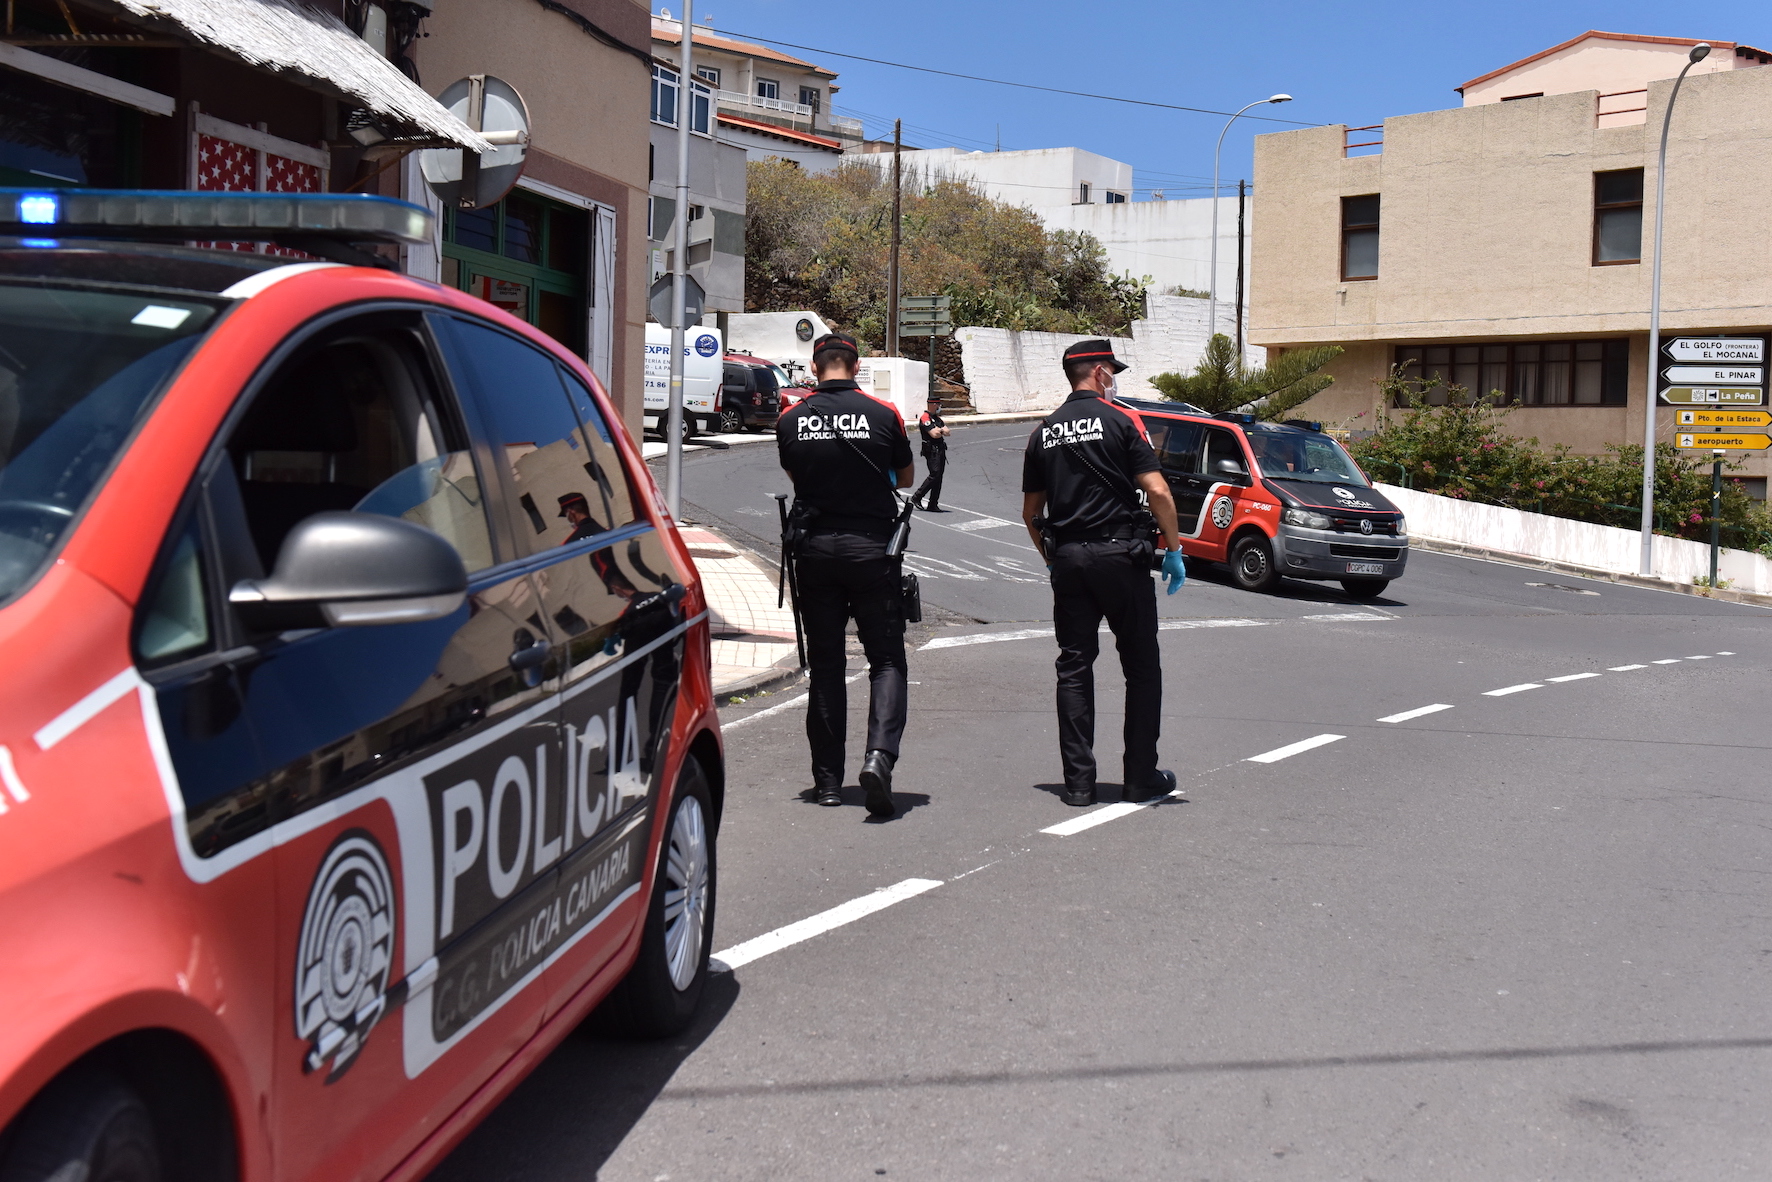 La Policía Canaria tendrá presencia en El Hierro a partir de la próxima semana para ayudar en la lucha contra la Covid19